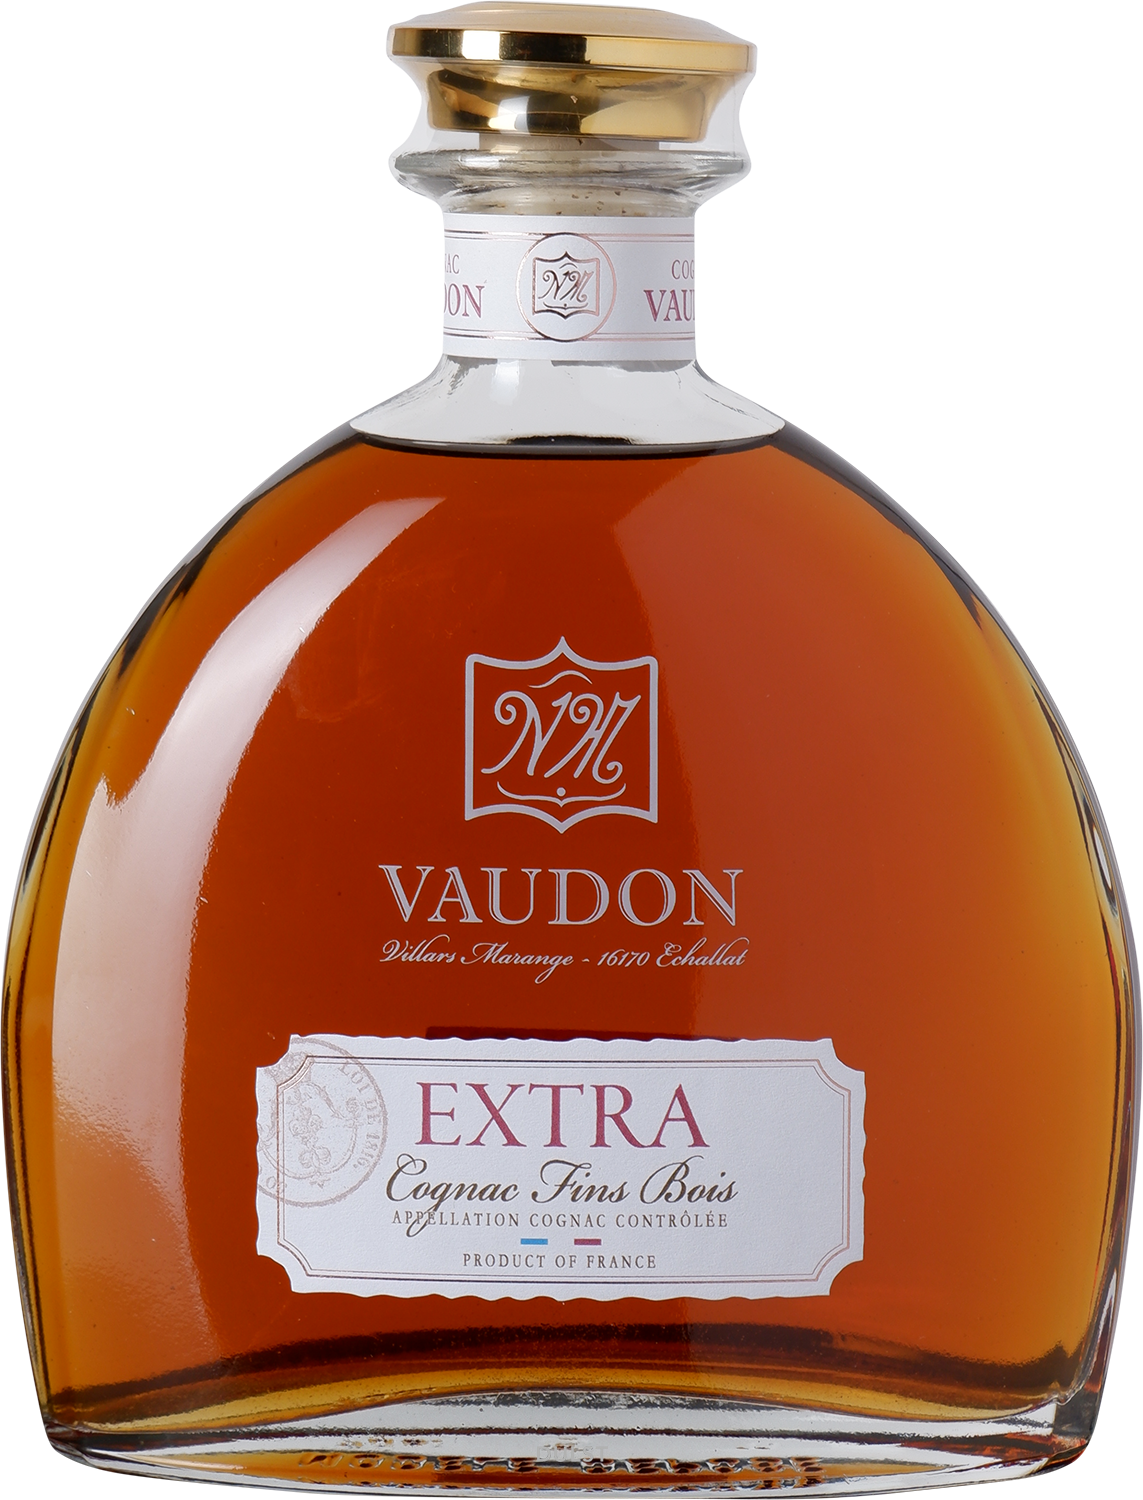 Cognac Vaudon - Extra 40 y Old - 44% Cognac Fins Bois Carafe with giftbox